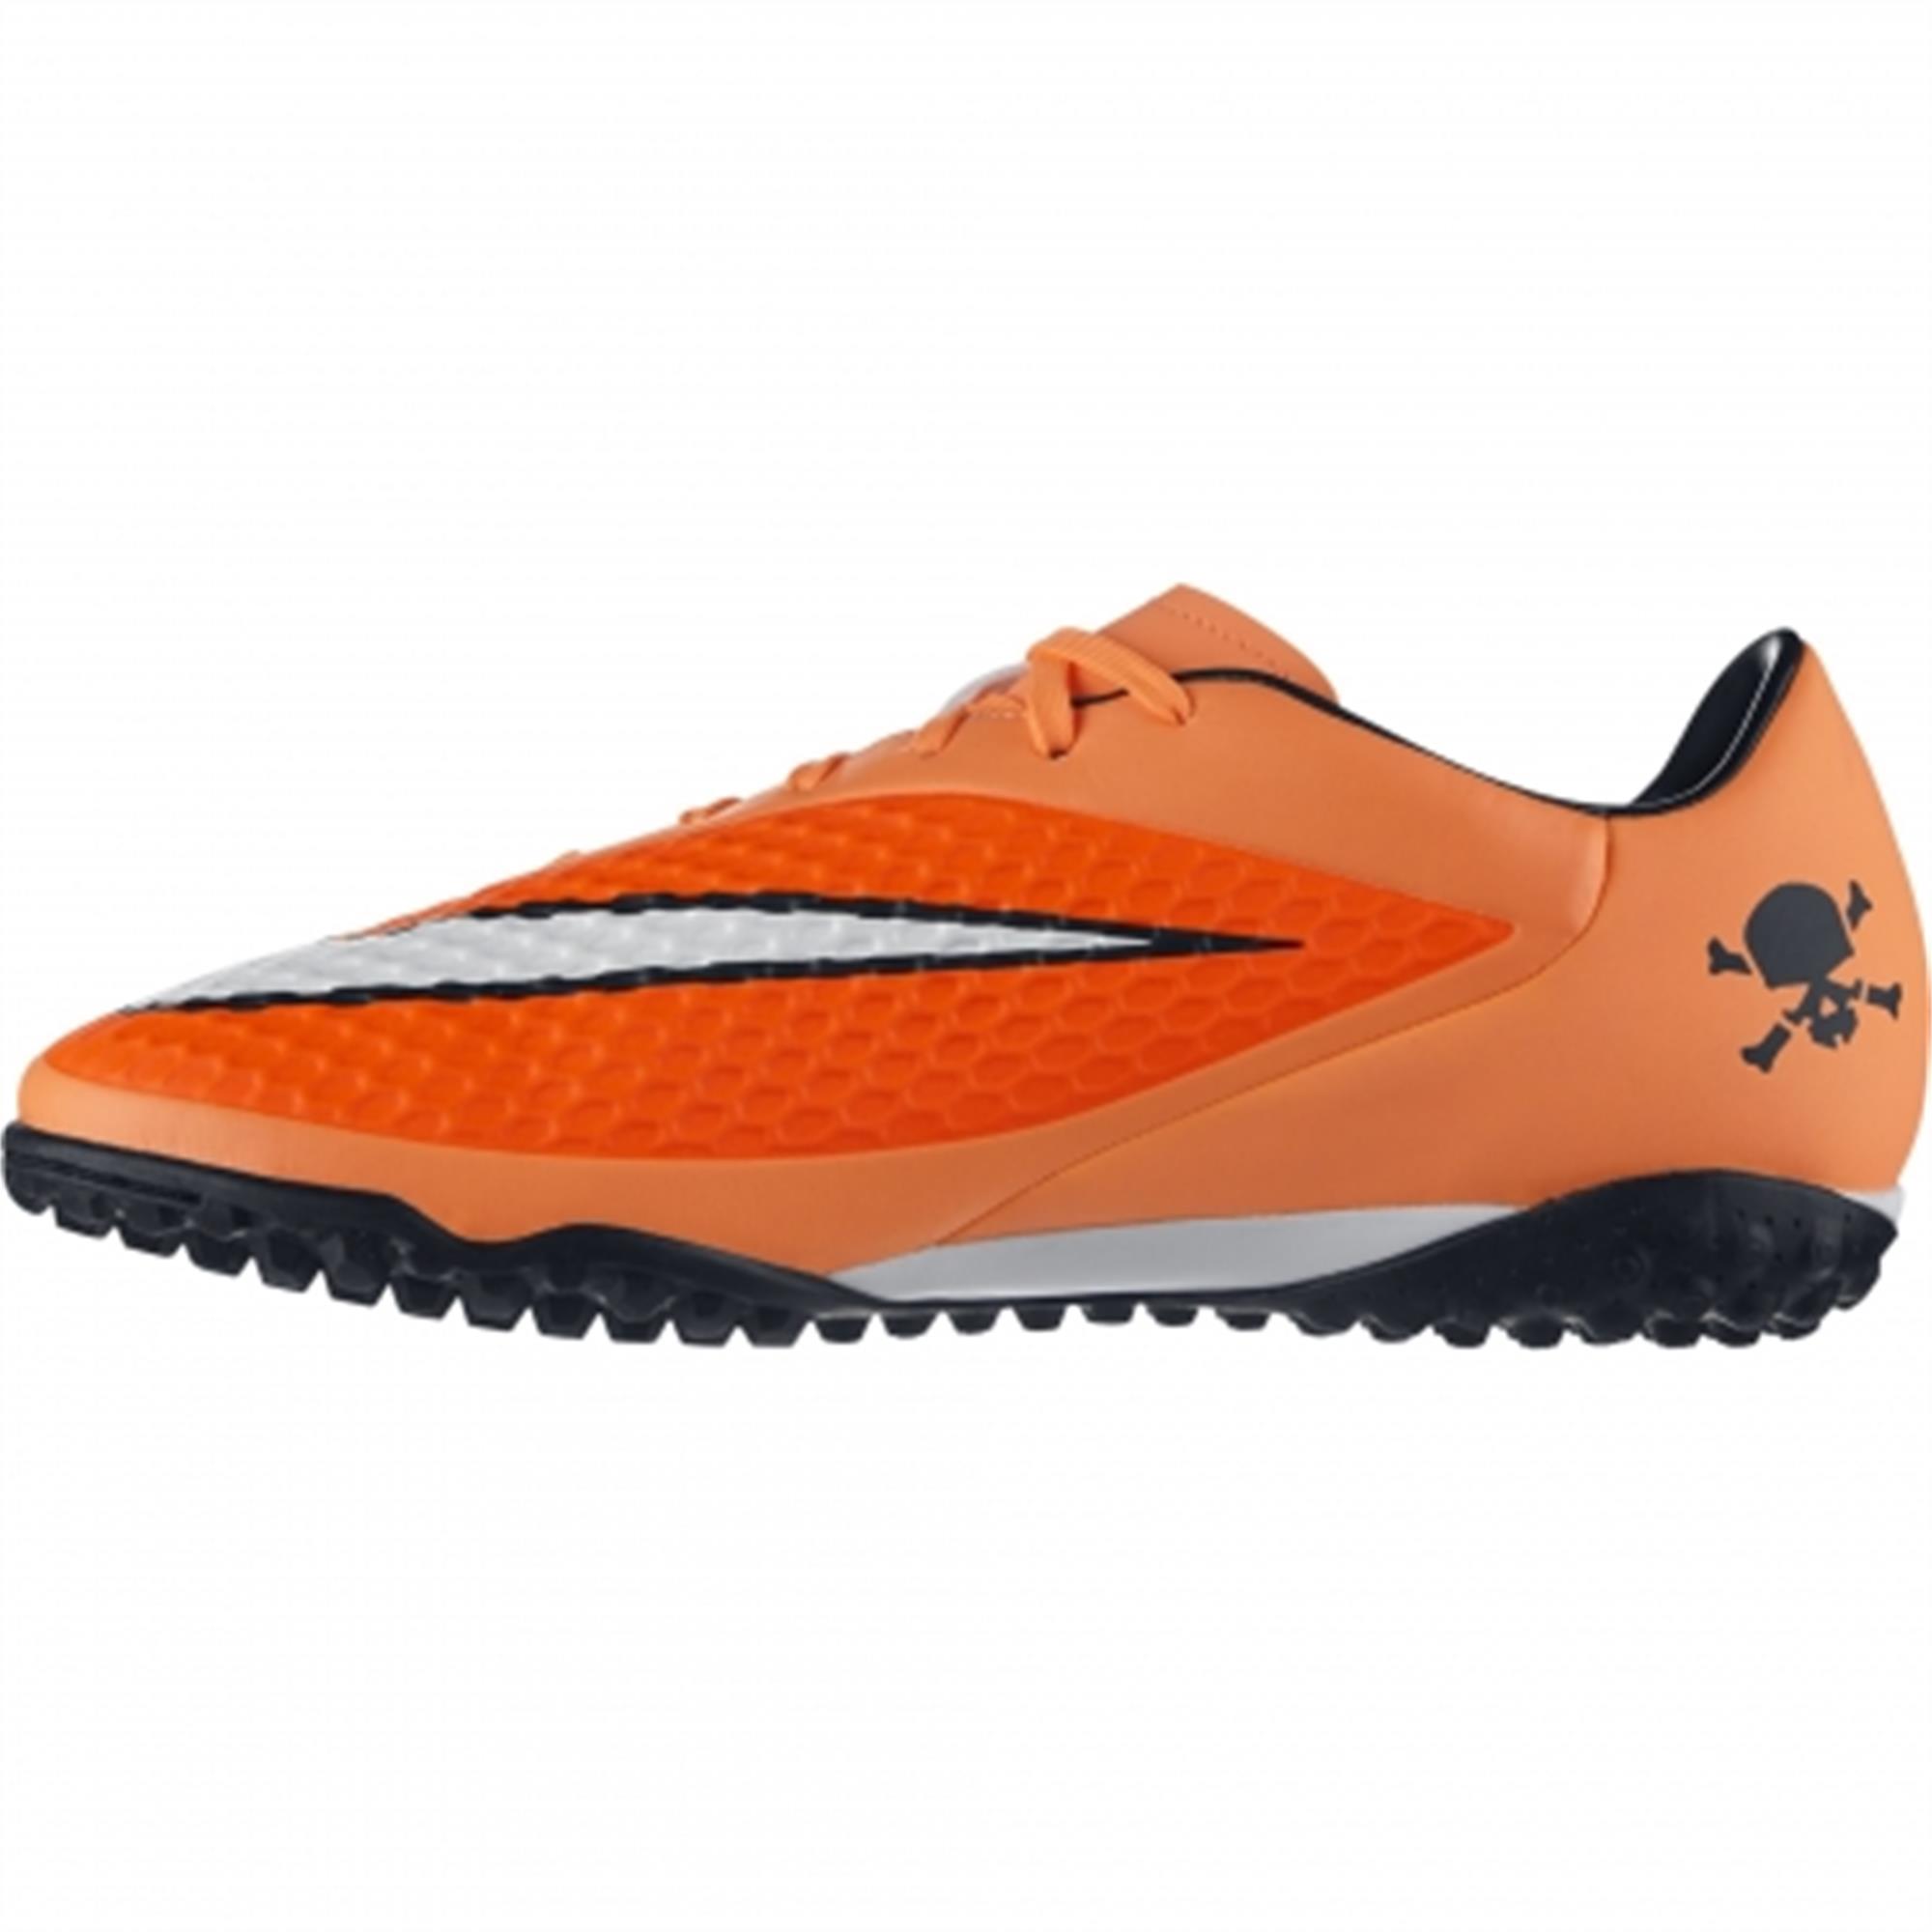 Nike Hypervenom Phelon TF Halı Saha Ayakkabısı 599846-800 | Etichet Sport